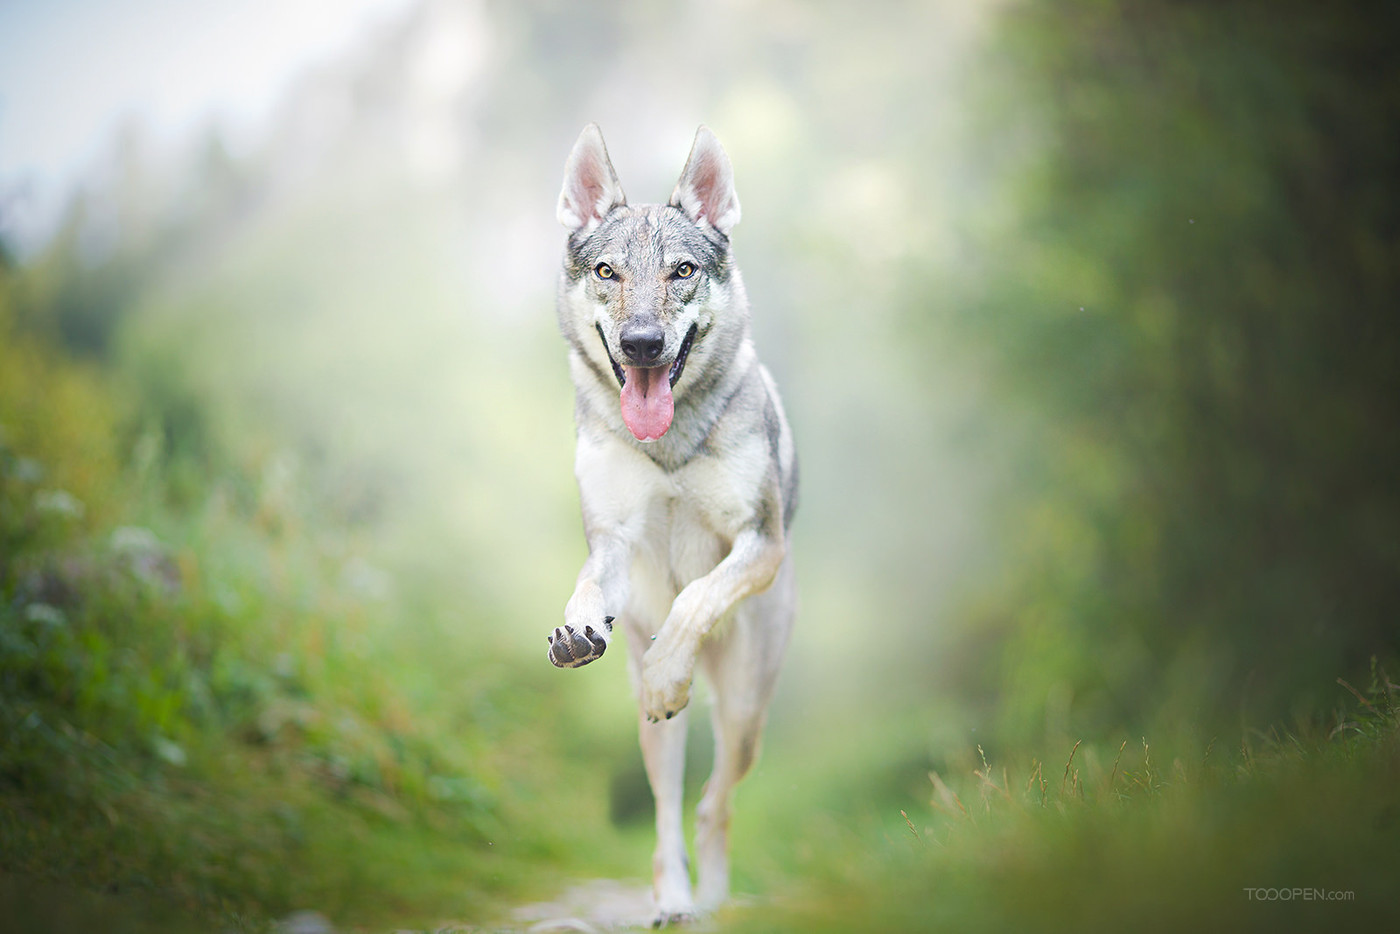 世界上最像狼的犬—捷克斯洛伐克狼犬 - 哔哩哔哩